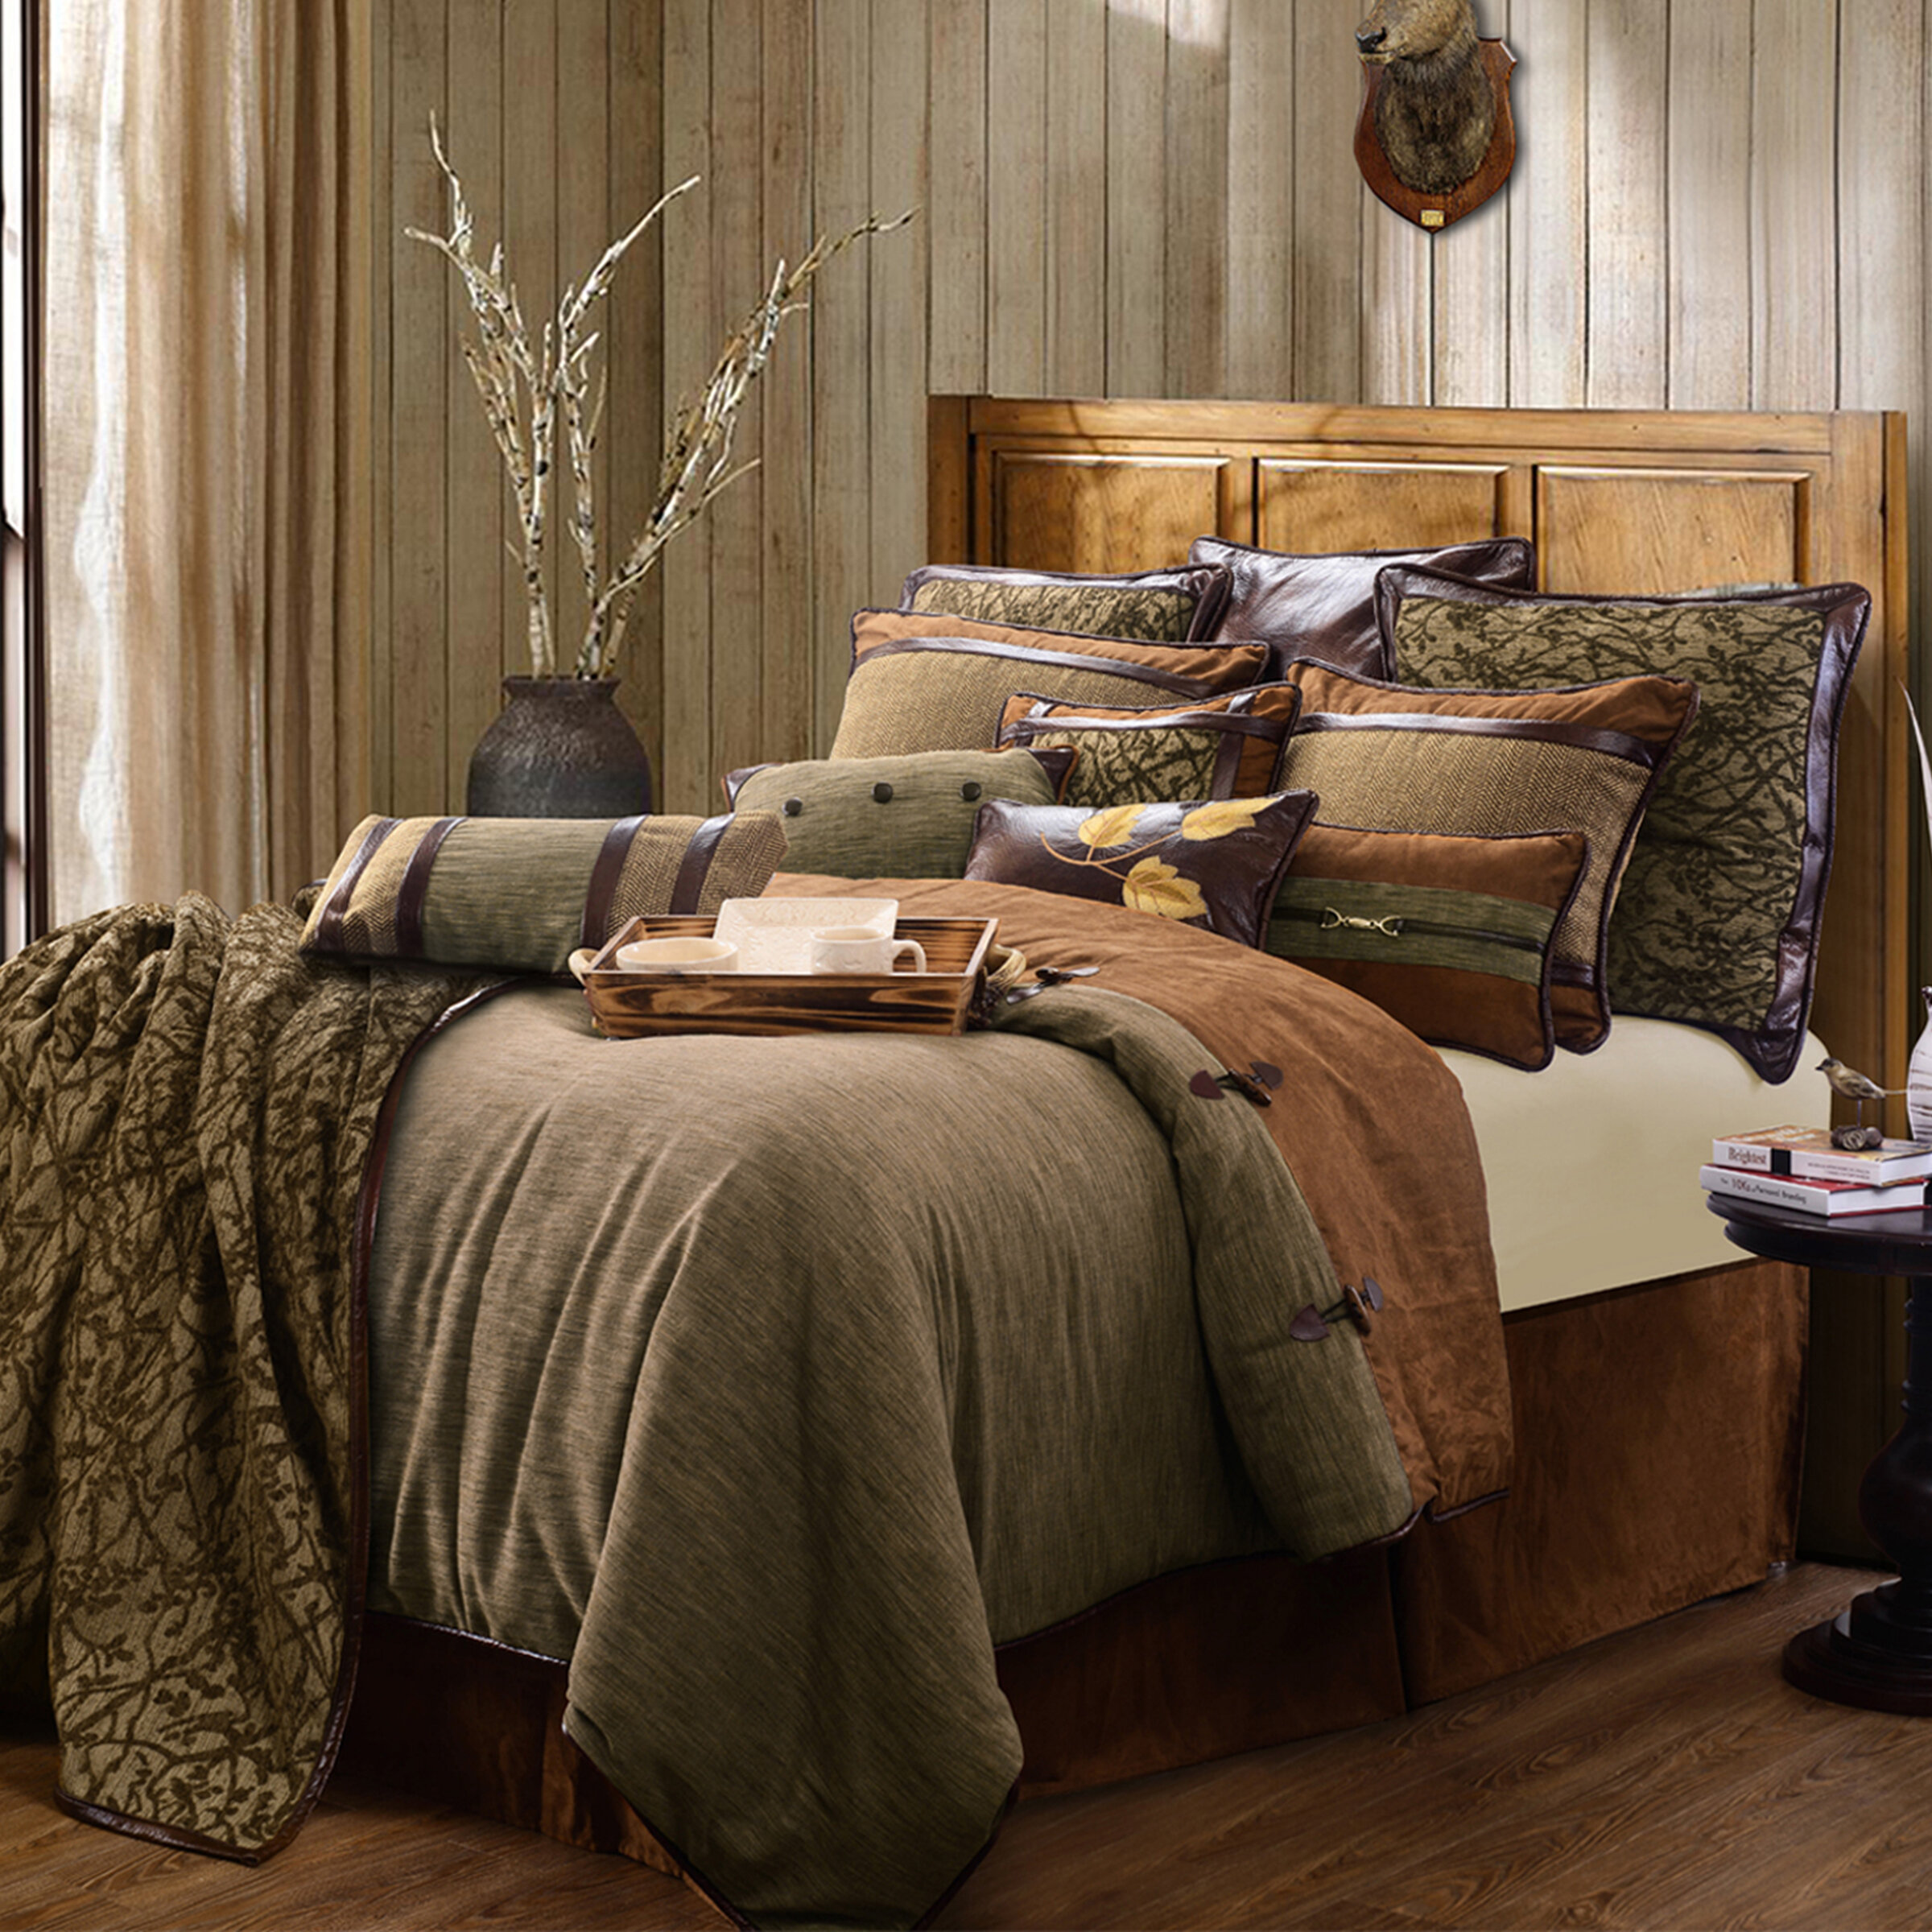 https://assets.wfcdn.com/im/65877066/compr-r85/1438/143855475/bryker-olivebrown-jacquard-rustic-cabin-lodge-comforter-set.jpg